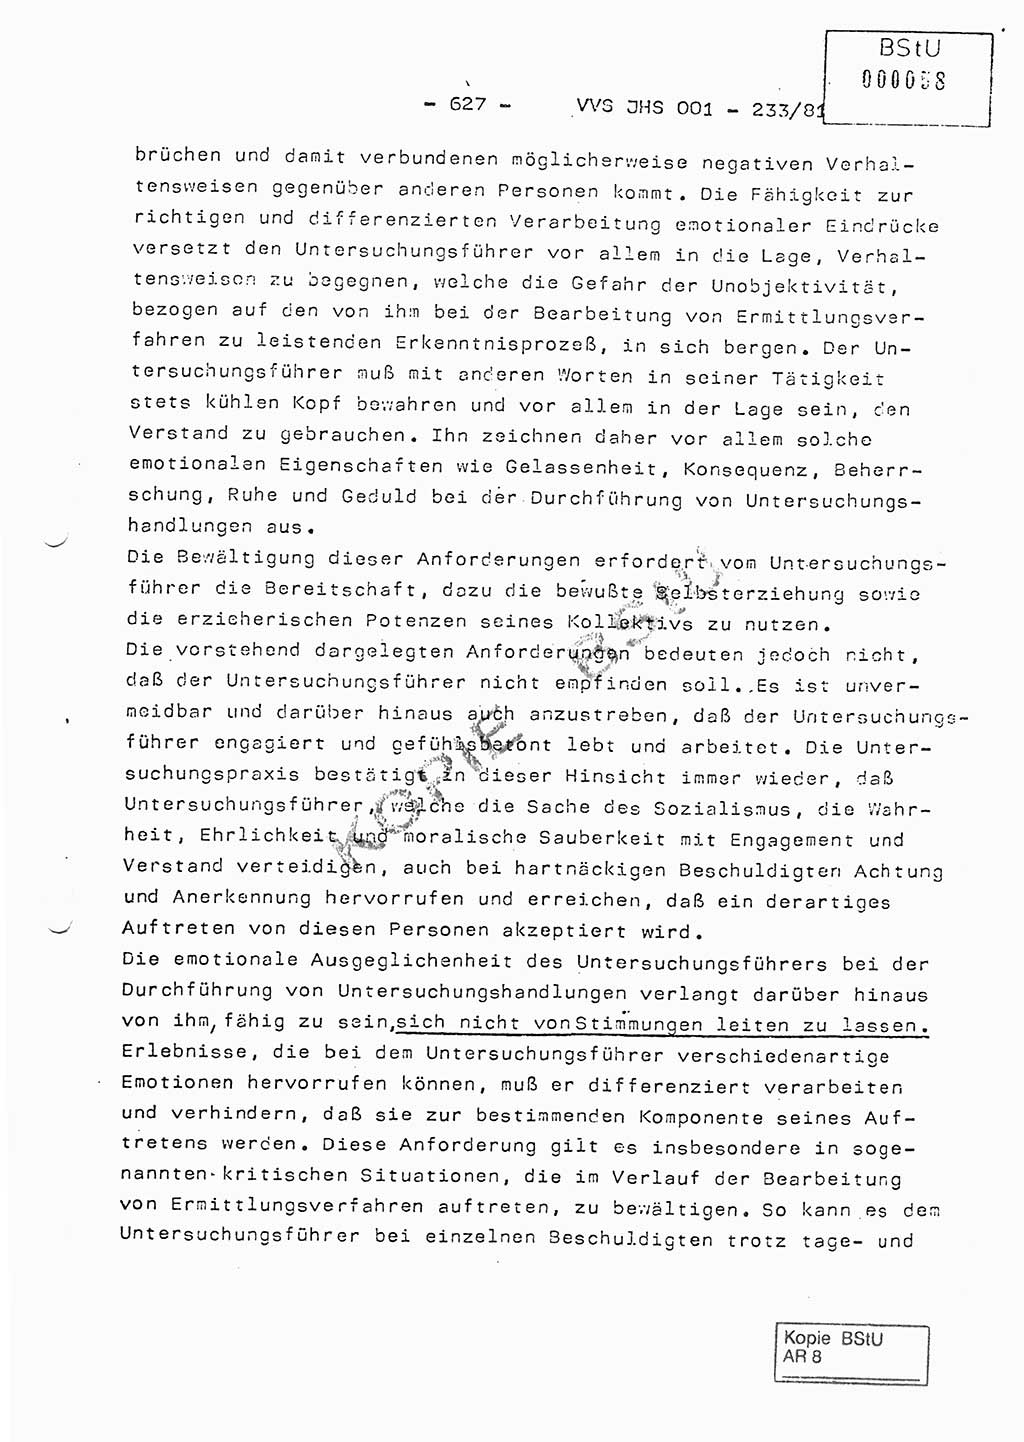 Dissertation Oberstleutnant Horst Zank (JHS), Oberstleutnant Dr. Karl-Heinz Knoblauch (JHS), Oberstleutnant Gustav-Adolf Kowalewski (HA Ⅸ), Oberstleutnant Wolfgang Plötner (HA Ⅸ), Ministerium für Staatssicherheit (MfS) [Deutsche Demokratische Republik (DDR)], Juristische Hochschule (JHS), Vertrauliche Verschlußsache (VVS) o001-233/81, Potsdam 1981, Blatt 627 (Diss. MfS DDR JHS VVS o001-233/81 1981, Bl. 627)